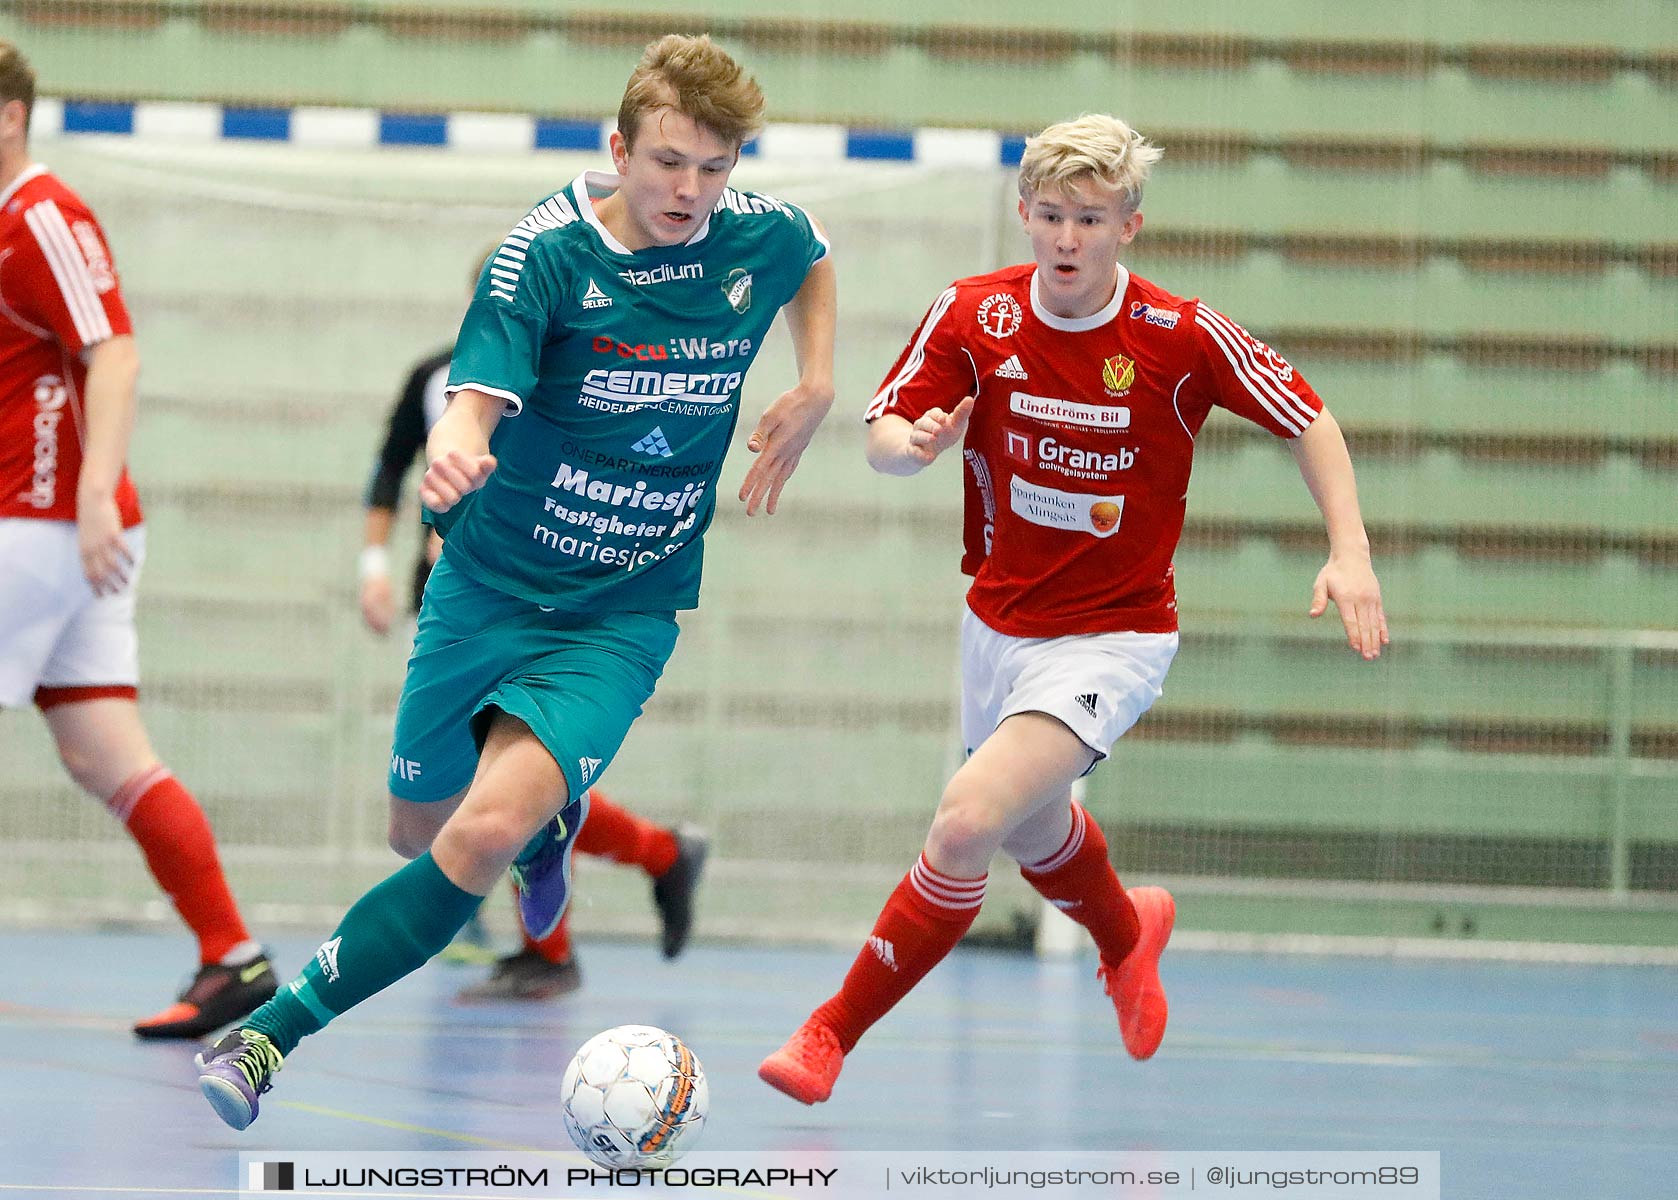 Skövde Futsalcup 2019 Herrar Vårgårda IK-Våmbs IF,herr,Arena Skövde,Skövde,Sverige,Futsal,,2019,227251